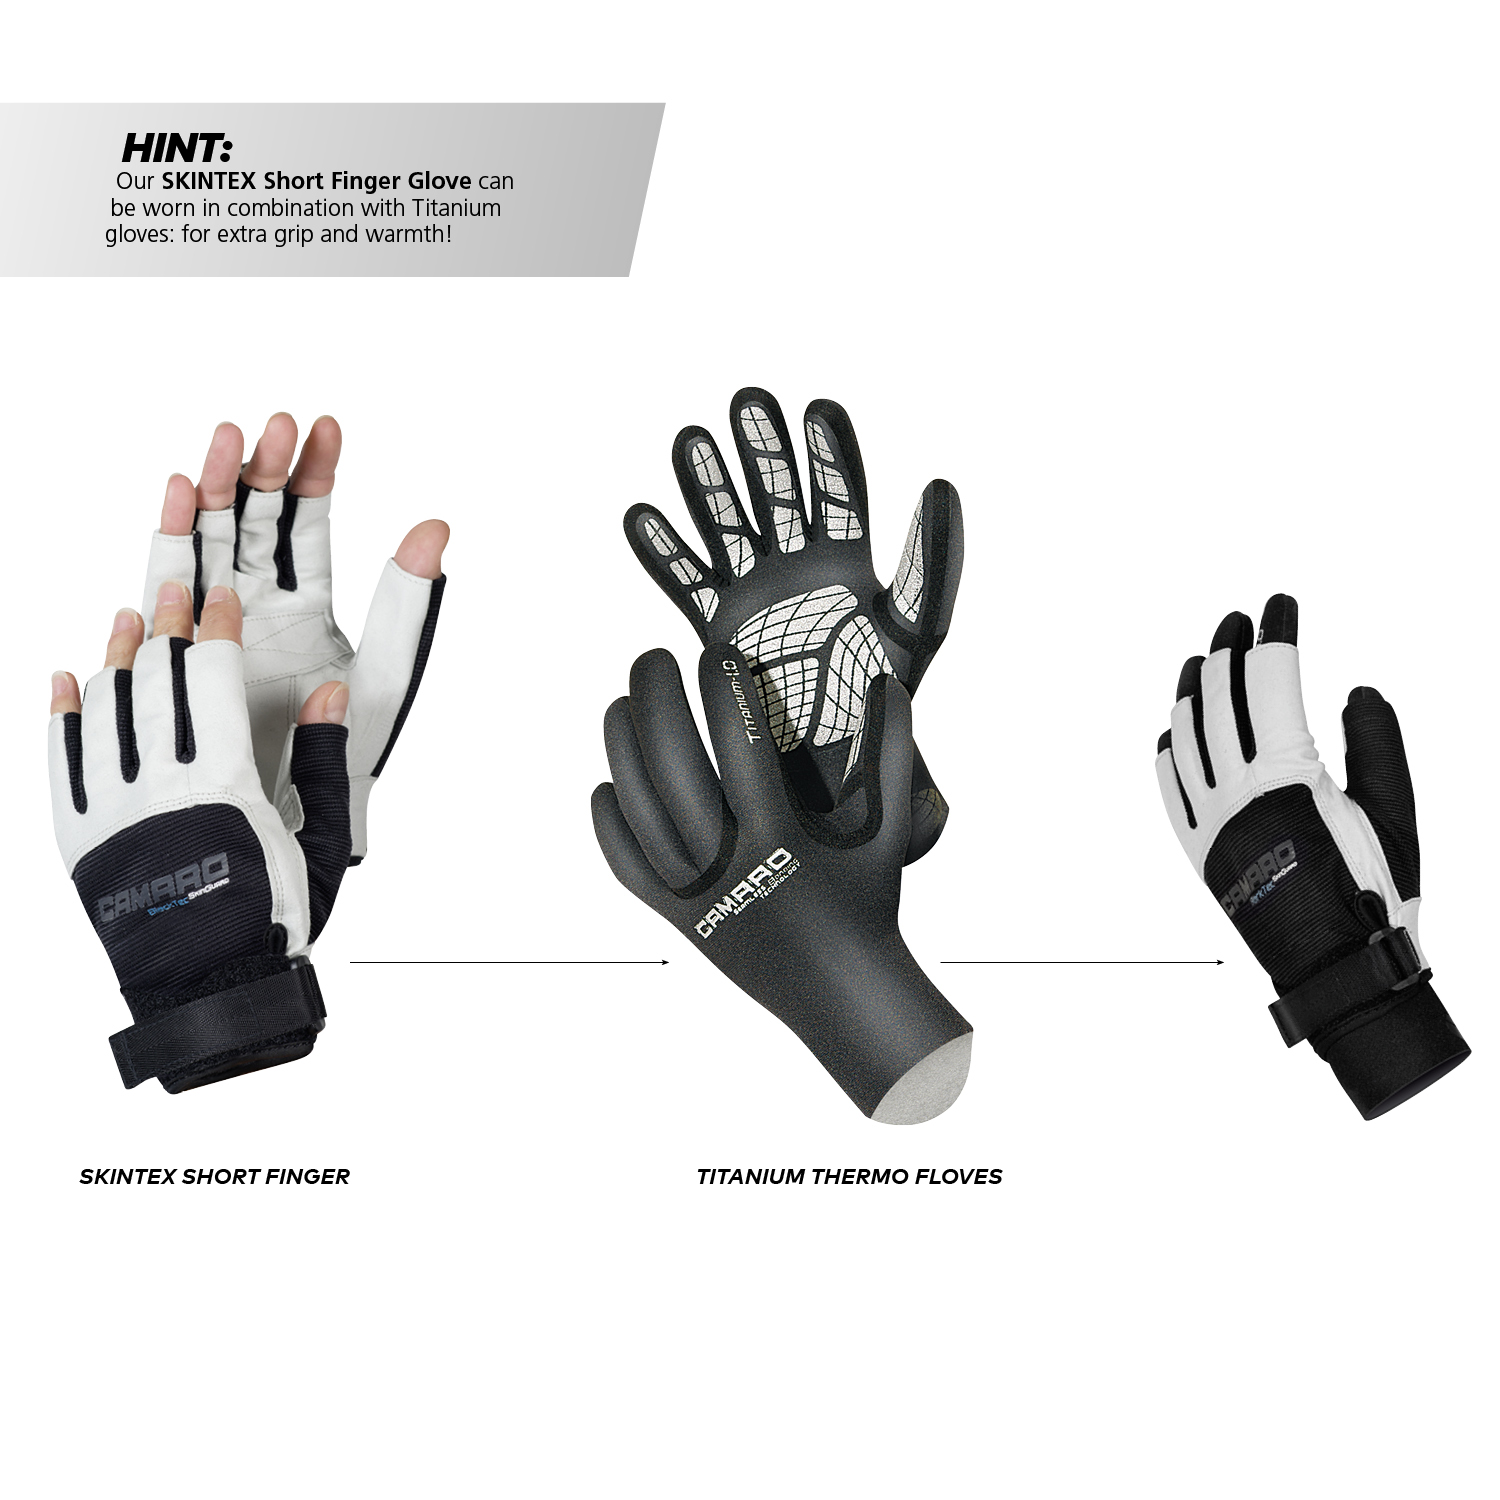 Skintex shortfinger gloves